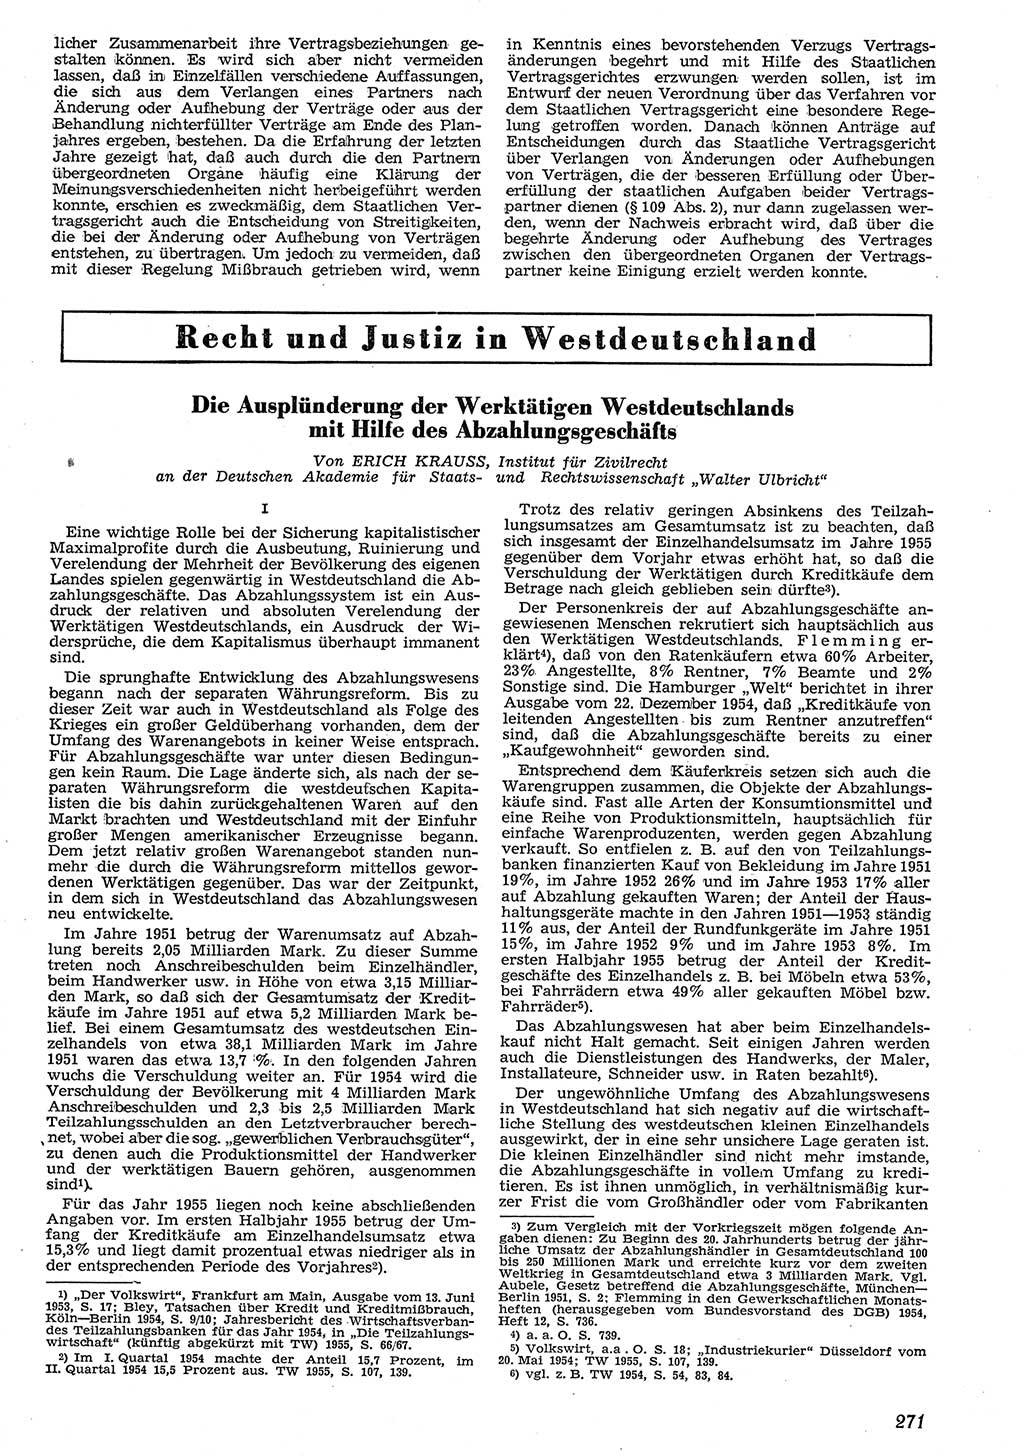 Neue Justiz (NJ), Zeitschrift für Recht und Rechtswissenschaft [Deutsche Demokratische Republik (DDR)], 10. Jahrgang 1956, Seite 271 (NJ DDR 1956, S. 271)